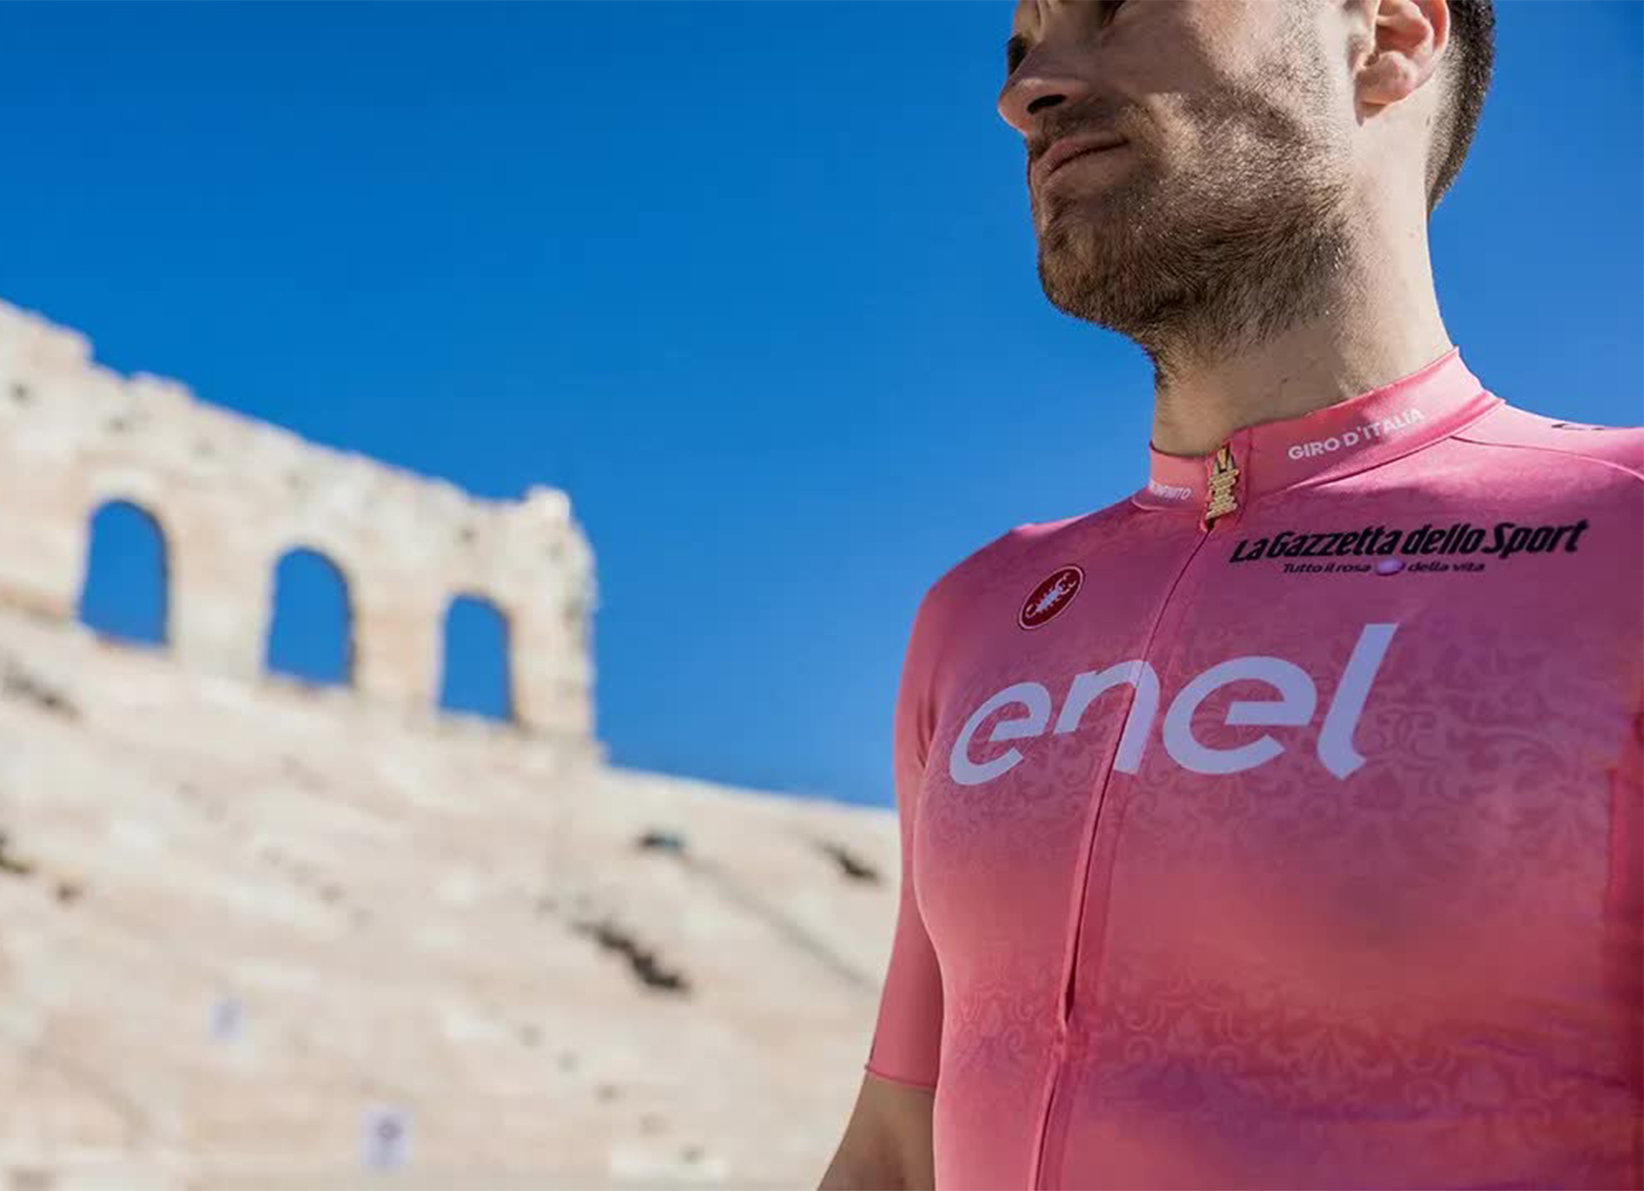 Giro d'Italia: Enel e la maglia rosa